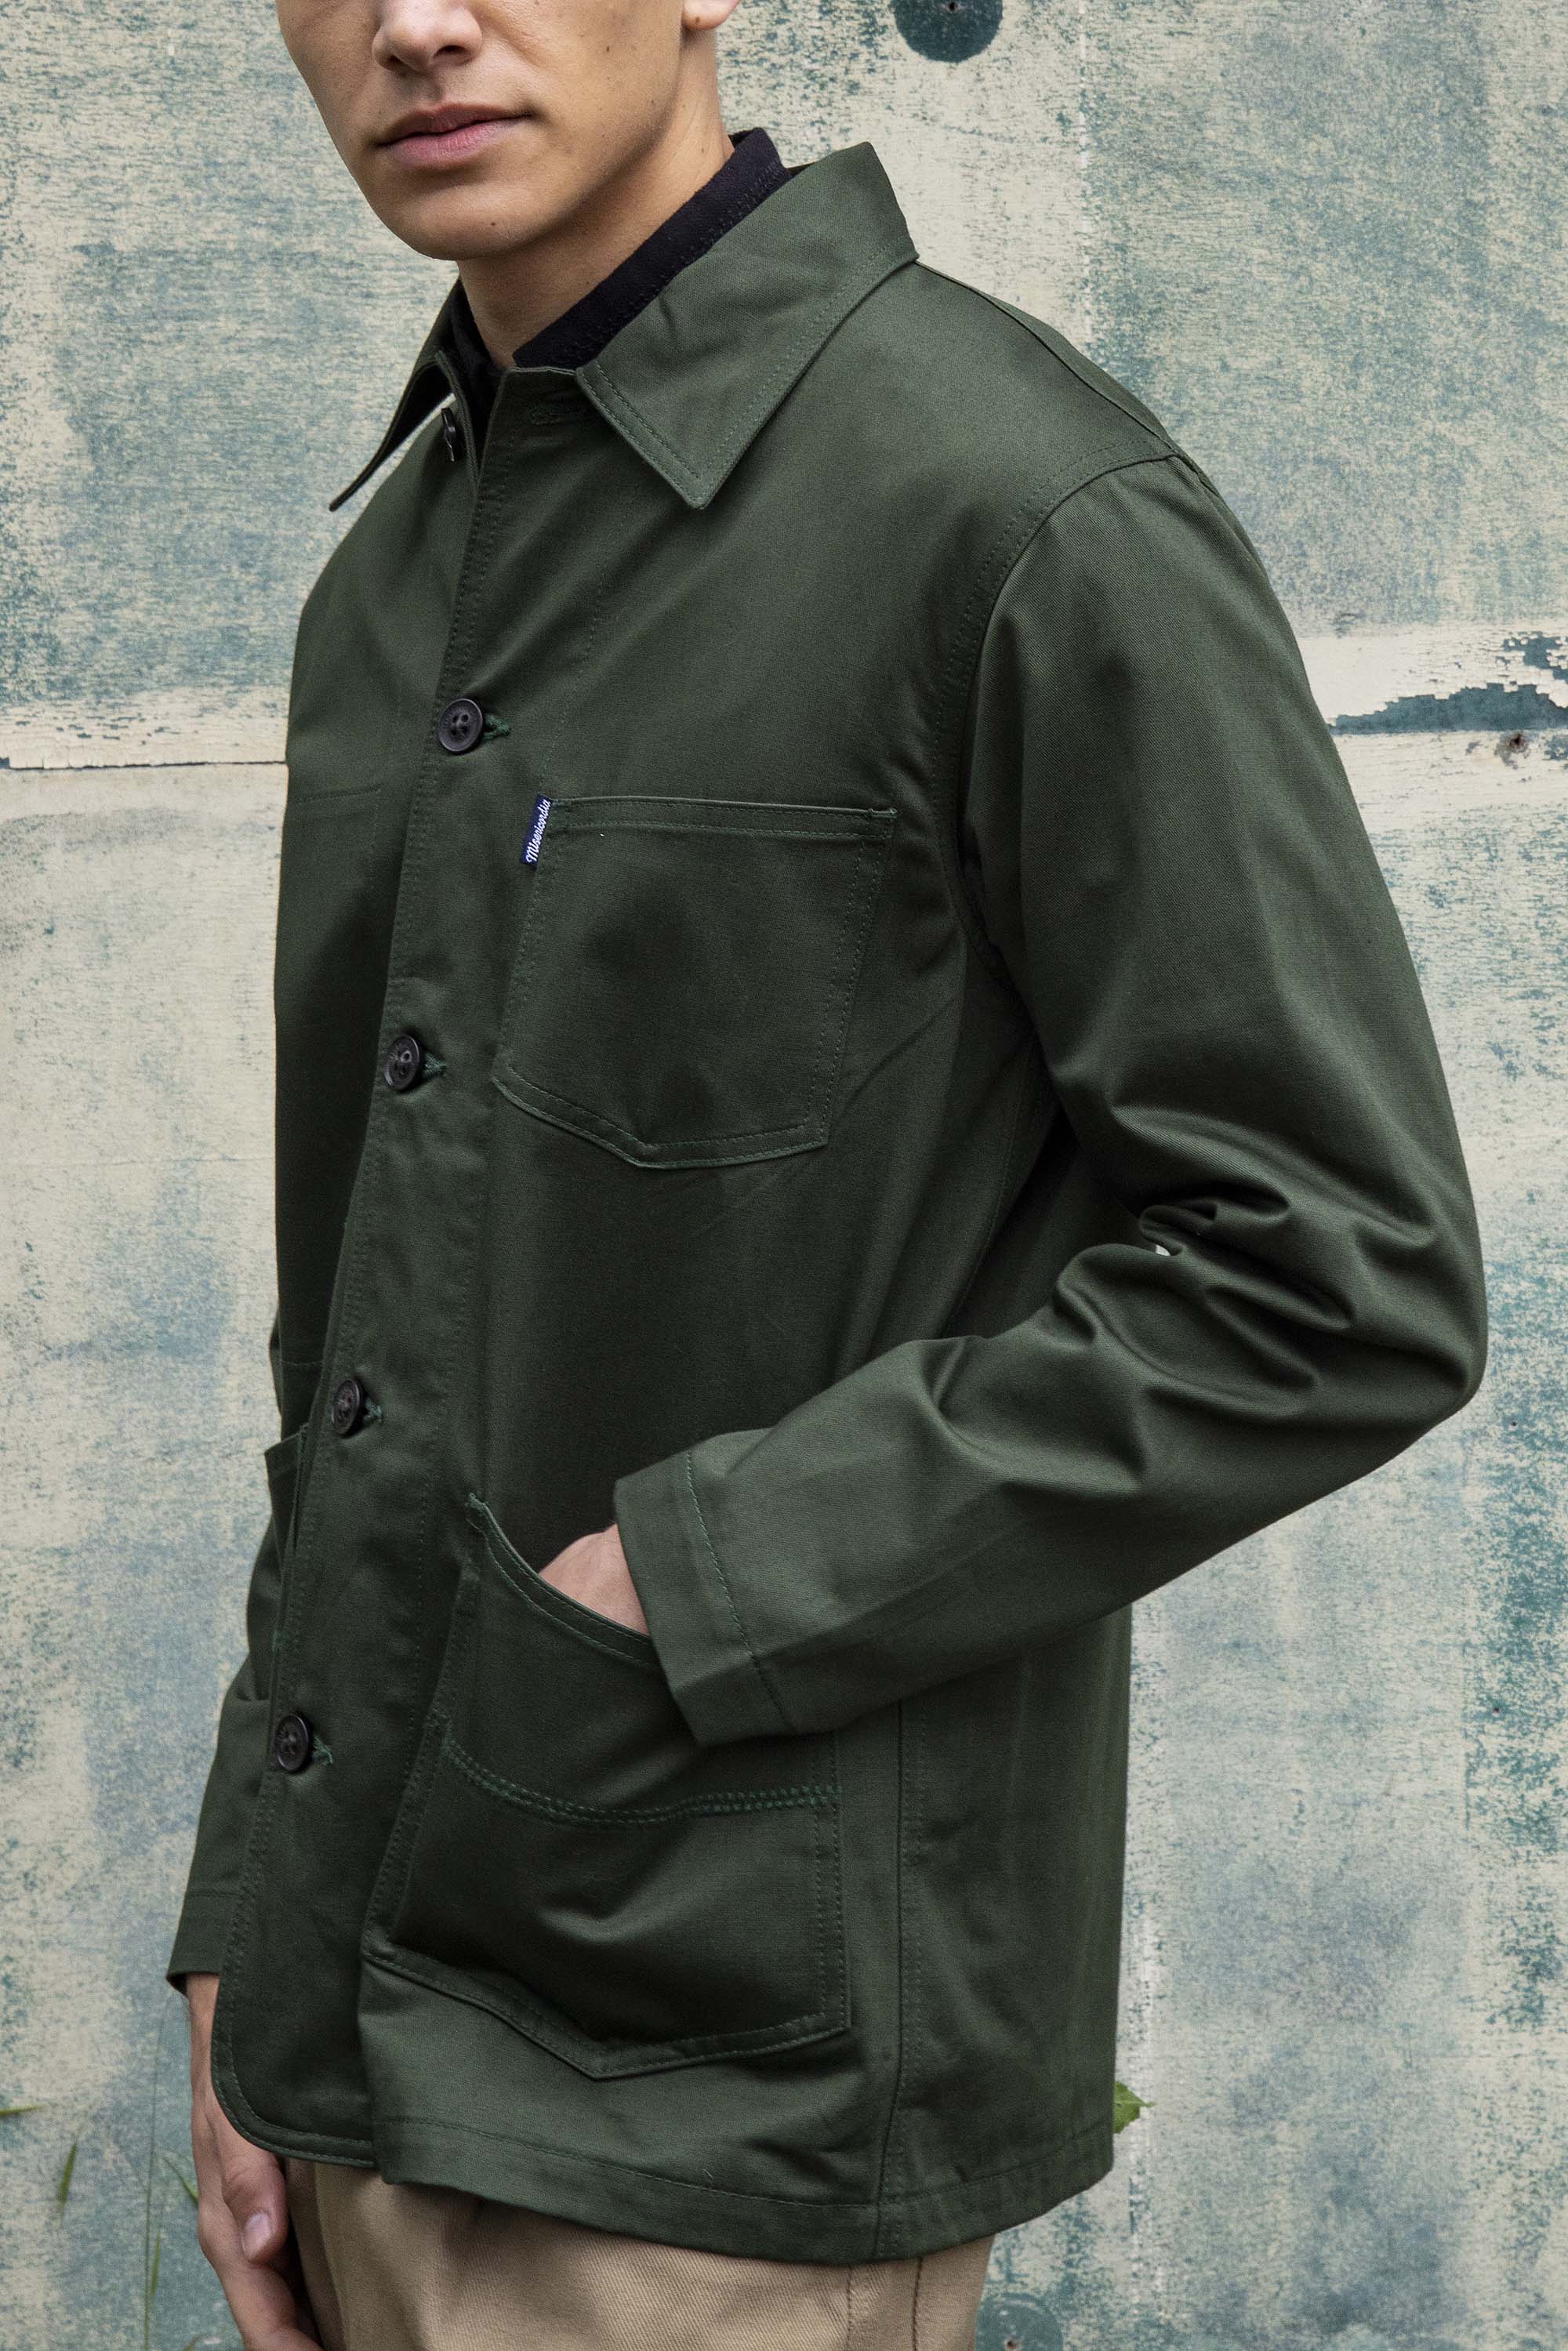 Manteau Magnus Vert Foncé look moderne et viril avec un vaste panel de coupes et de couleurs